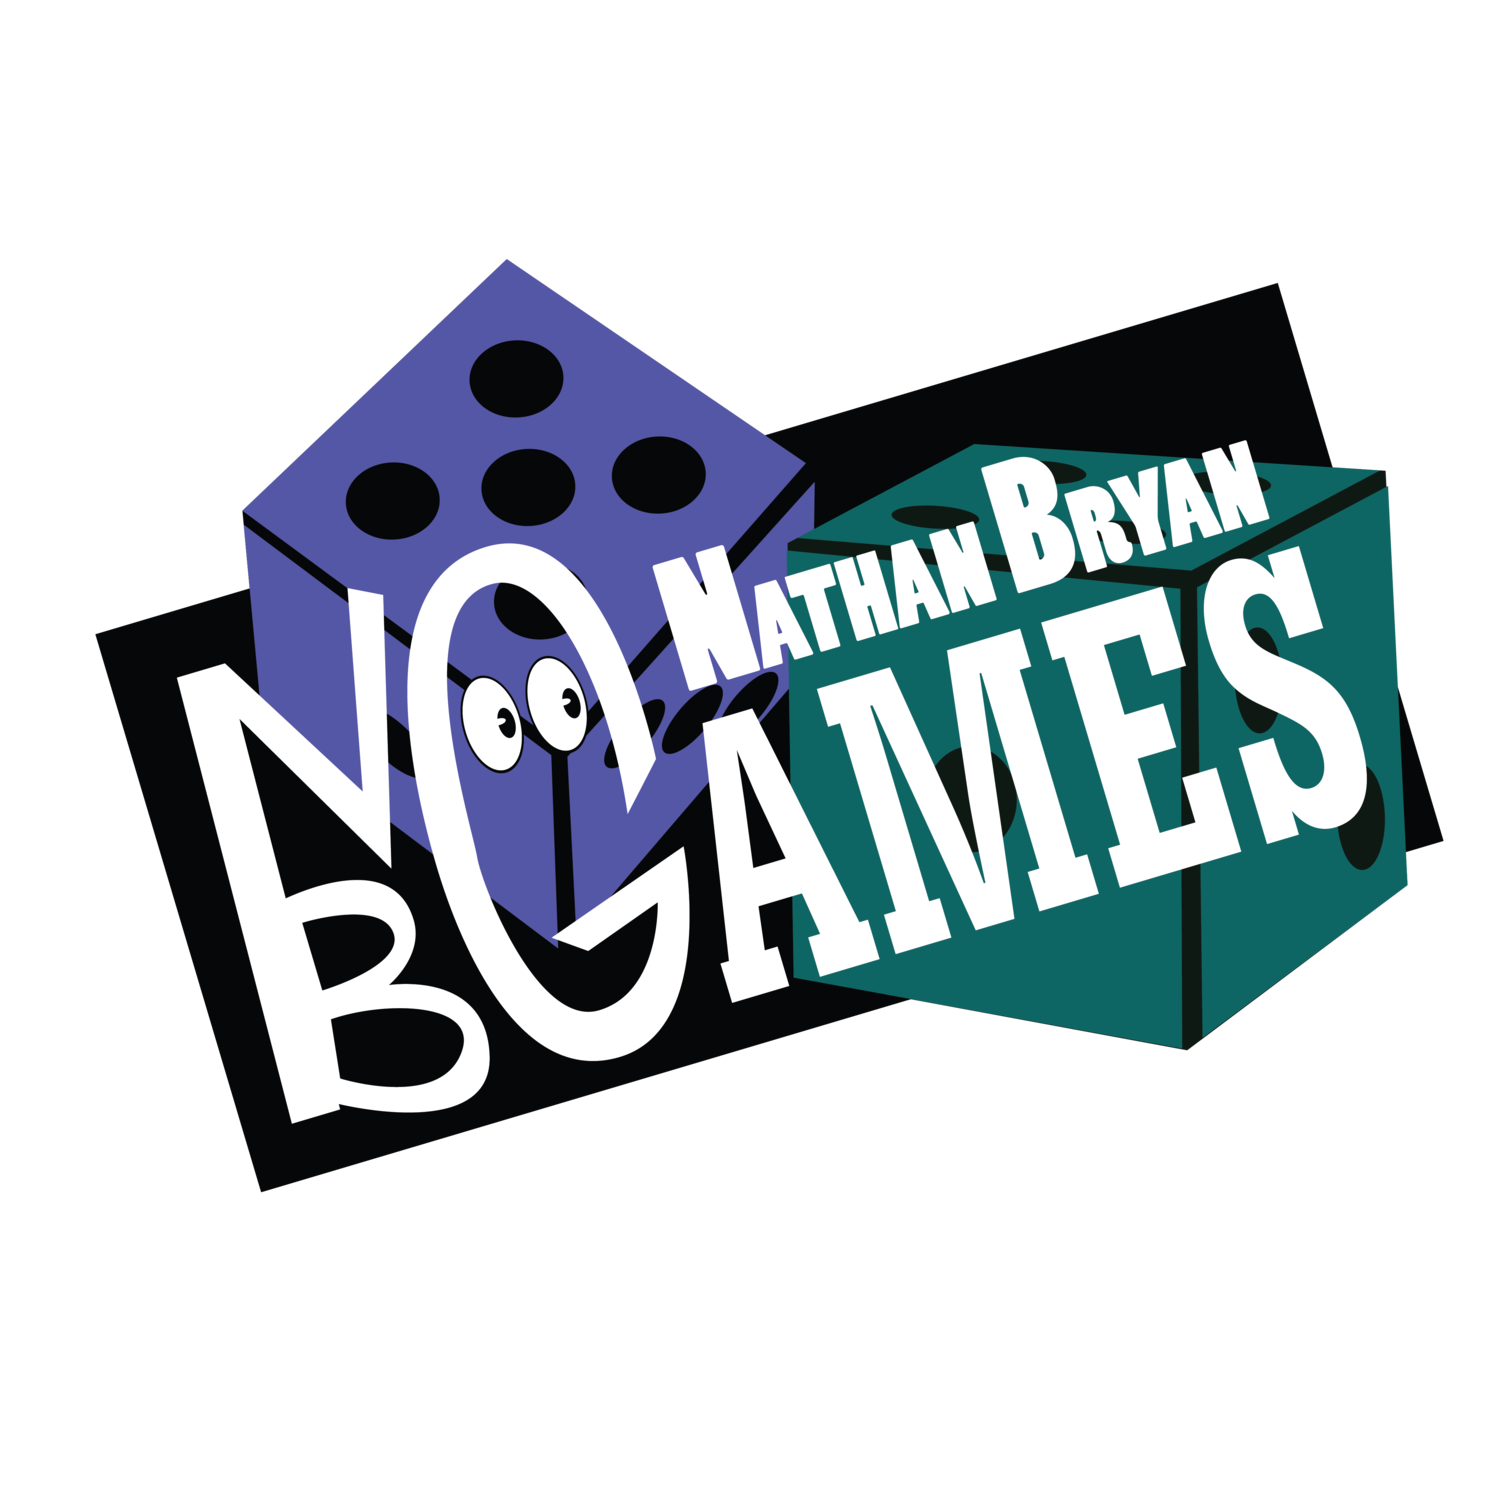 Nathan Bryan Games